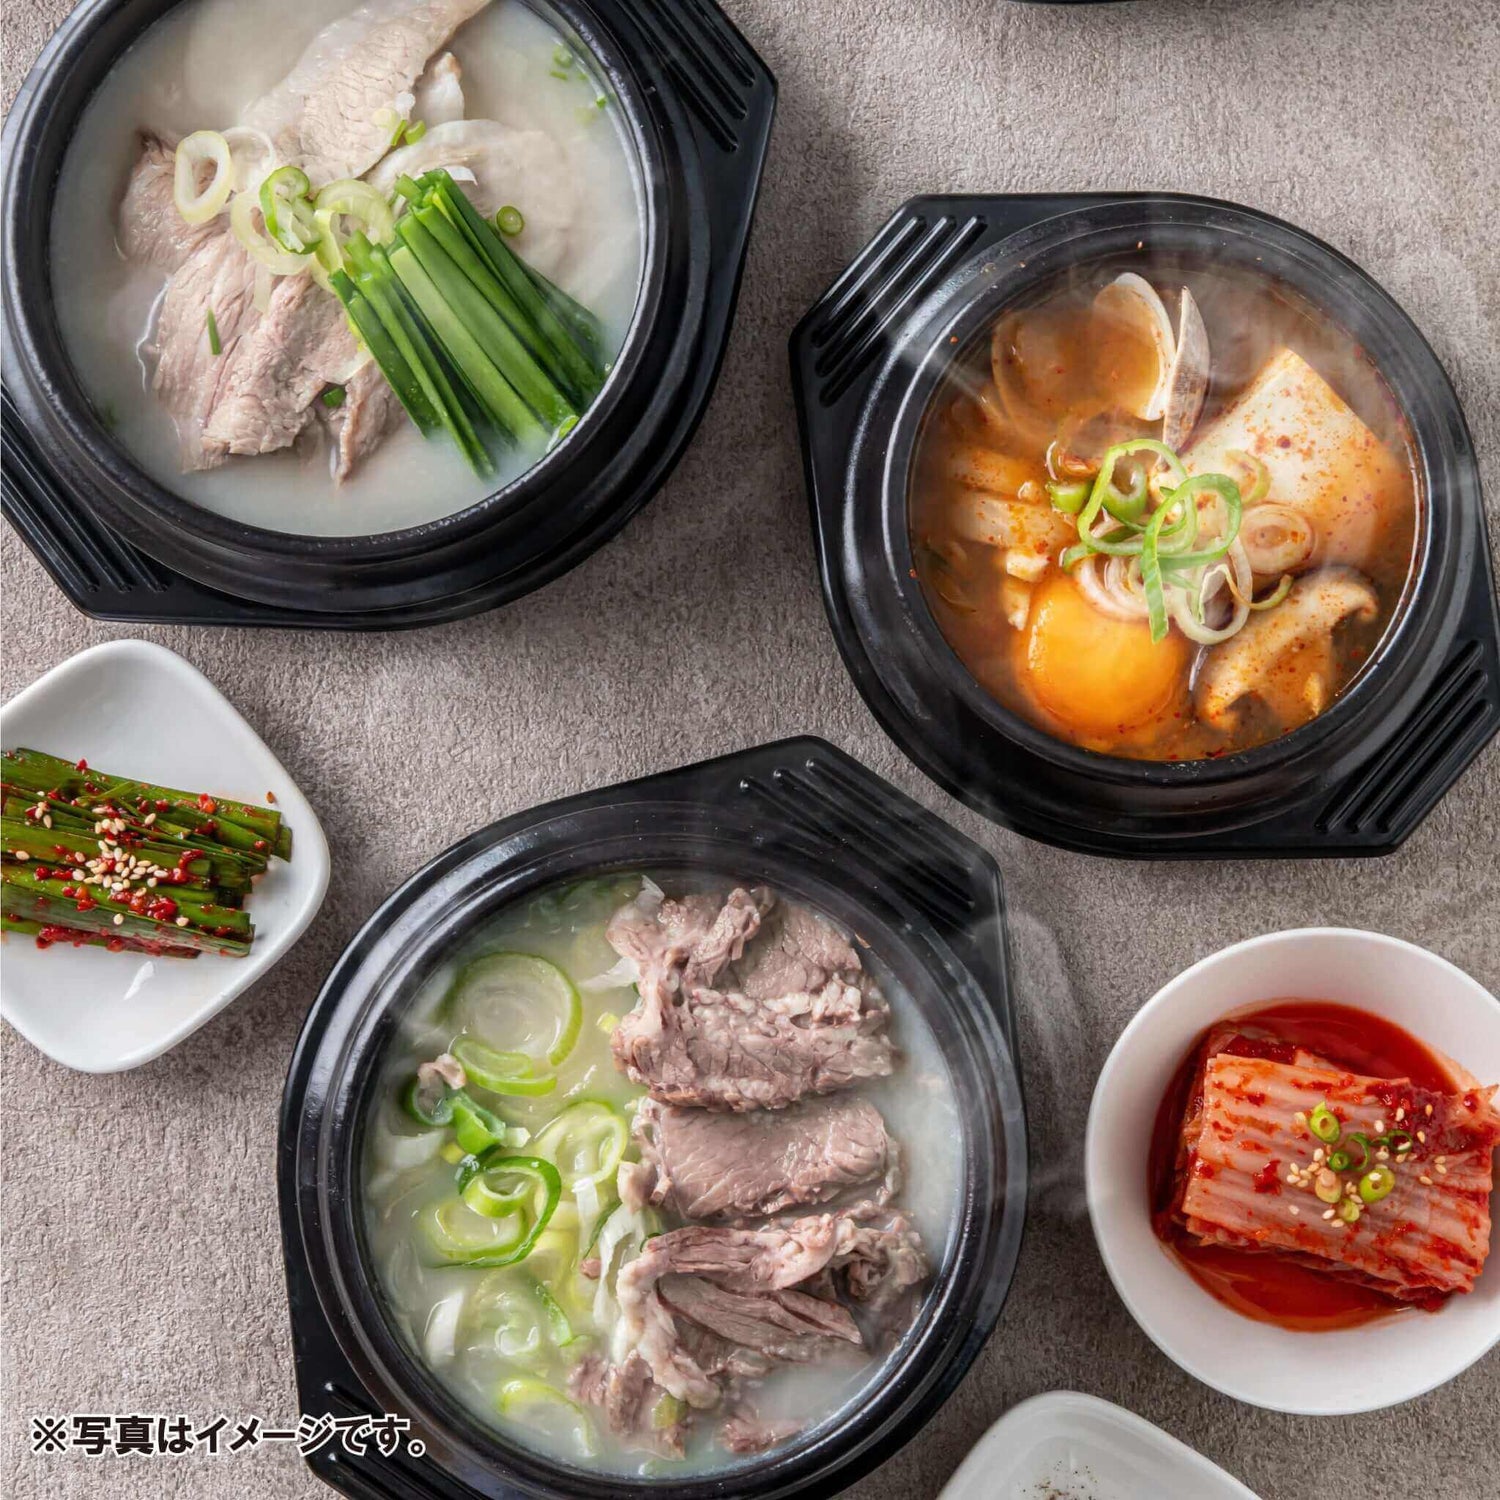 ソルロンタン 설렁탕（1人前 / 480g） - 韓国惣菜bibim'ネットストア